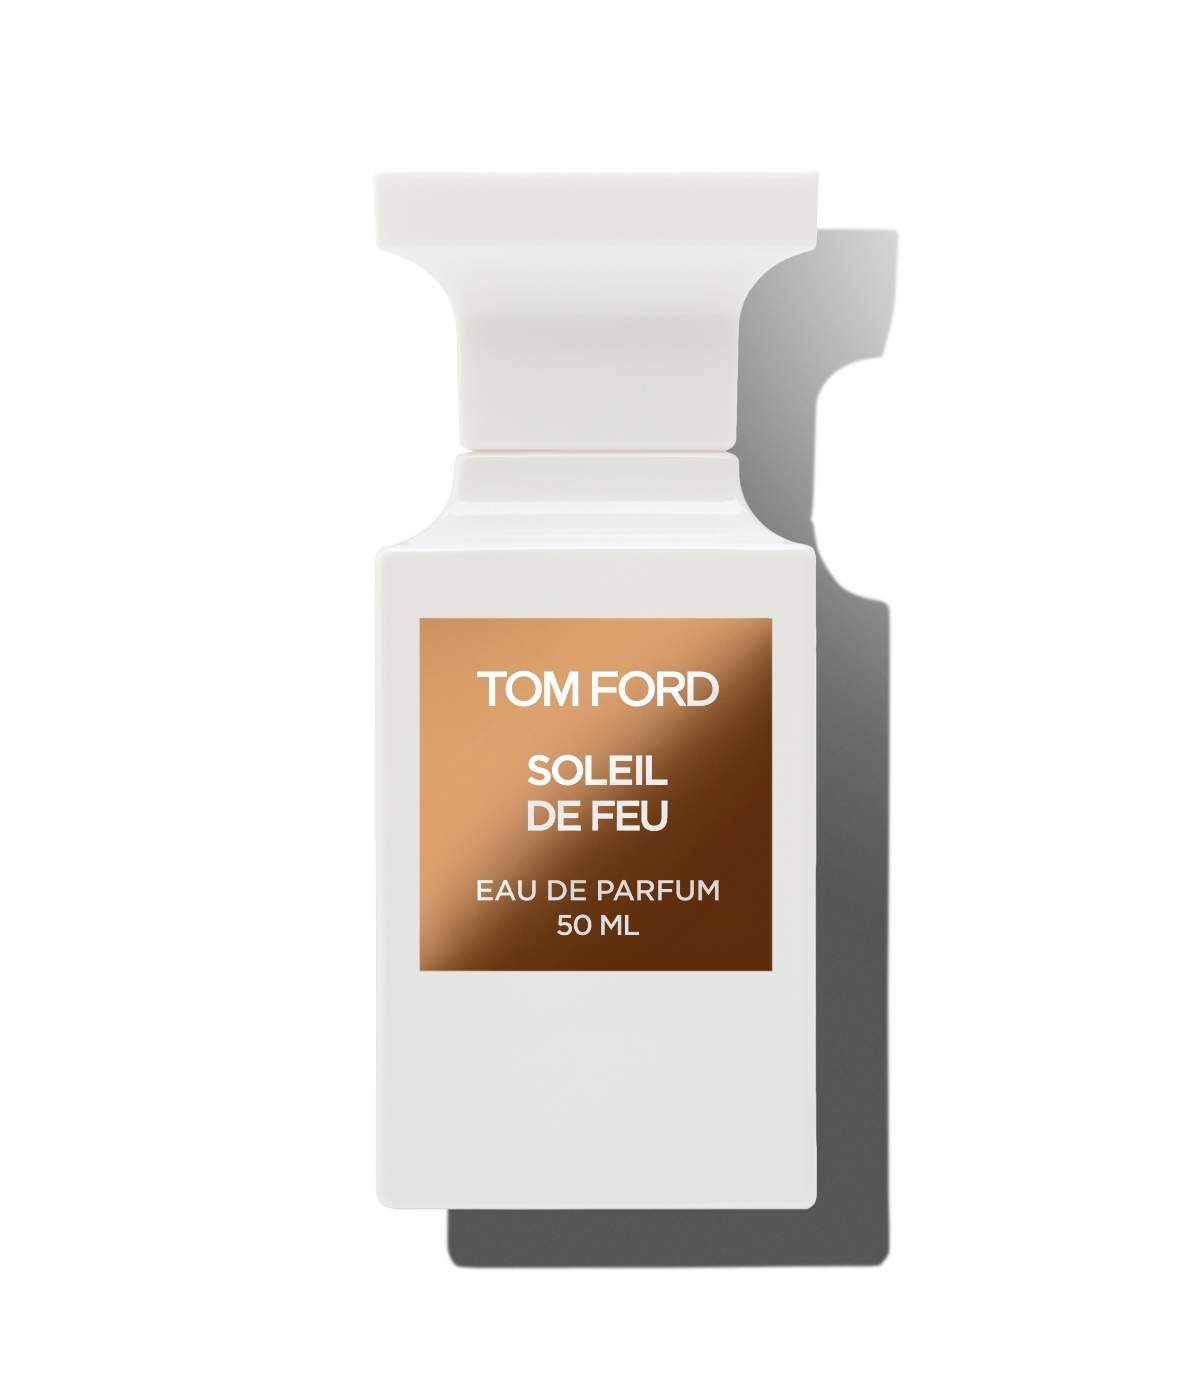 Eau de Parfum Soleil de Fou de Tom Ford.